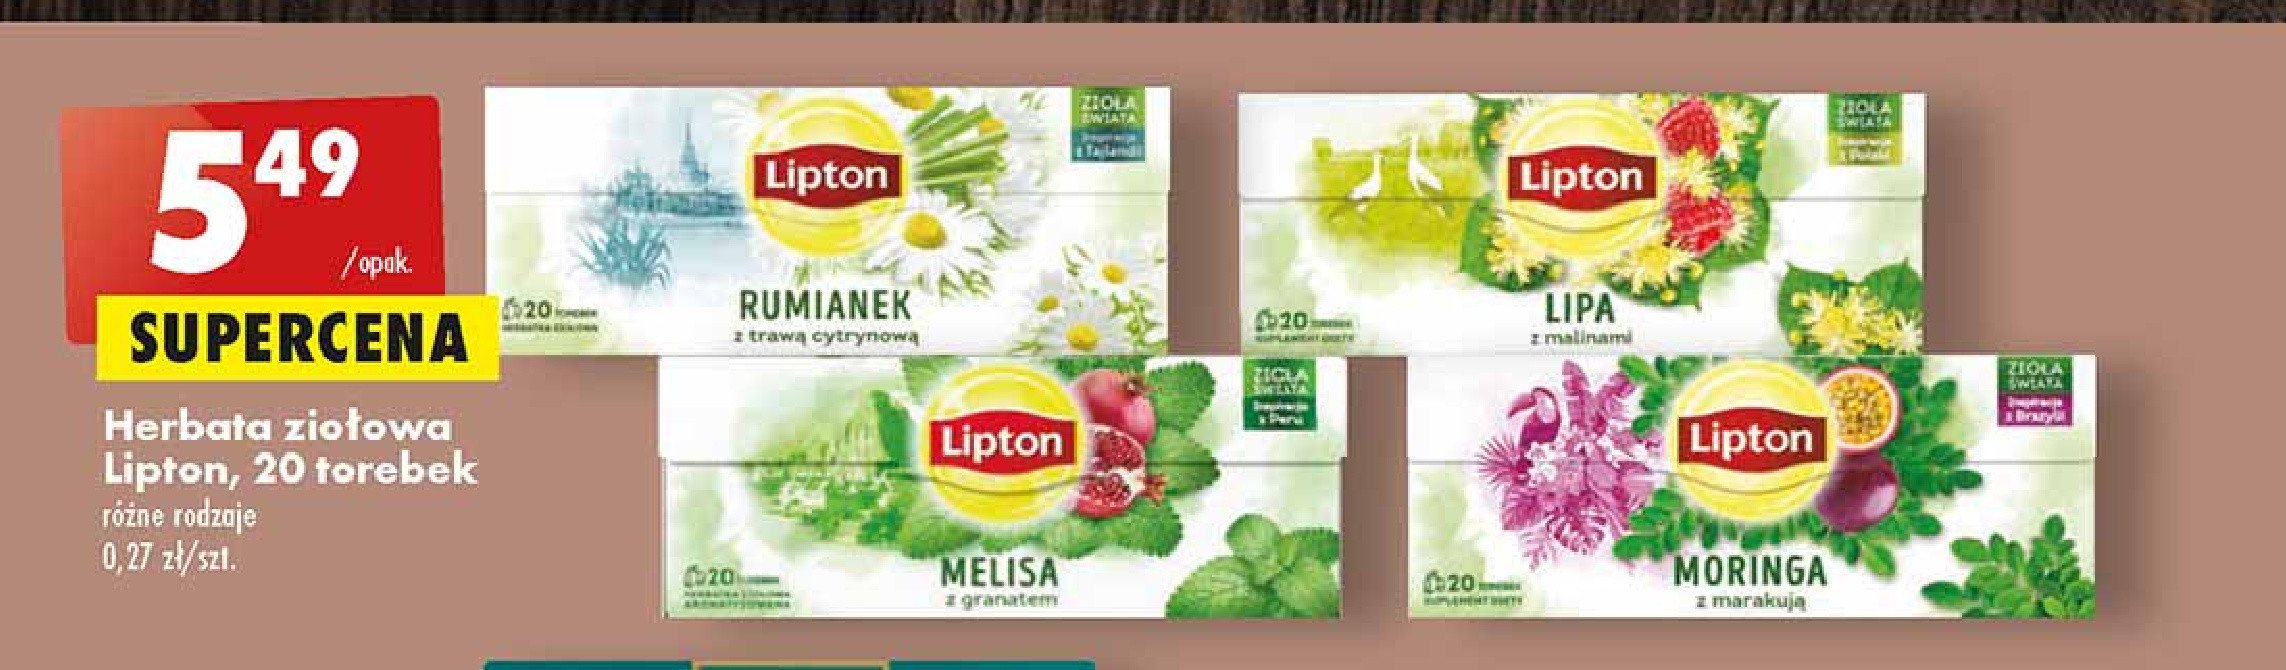 Herbatka lipa z malinami Lipton zioła świata promocja